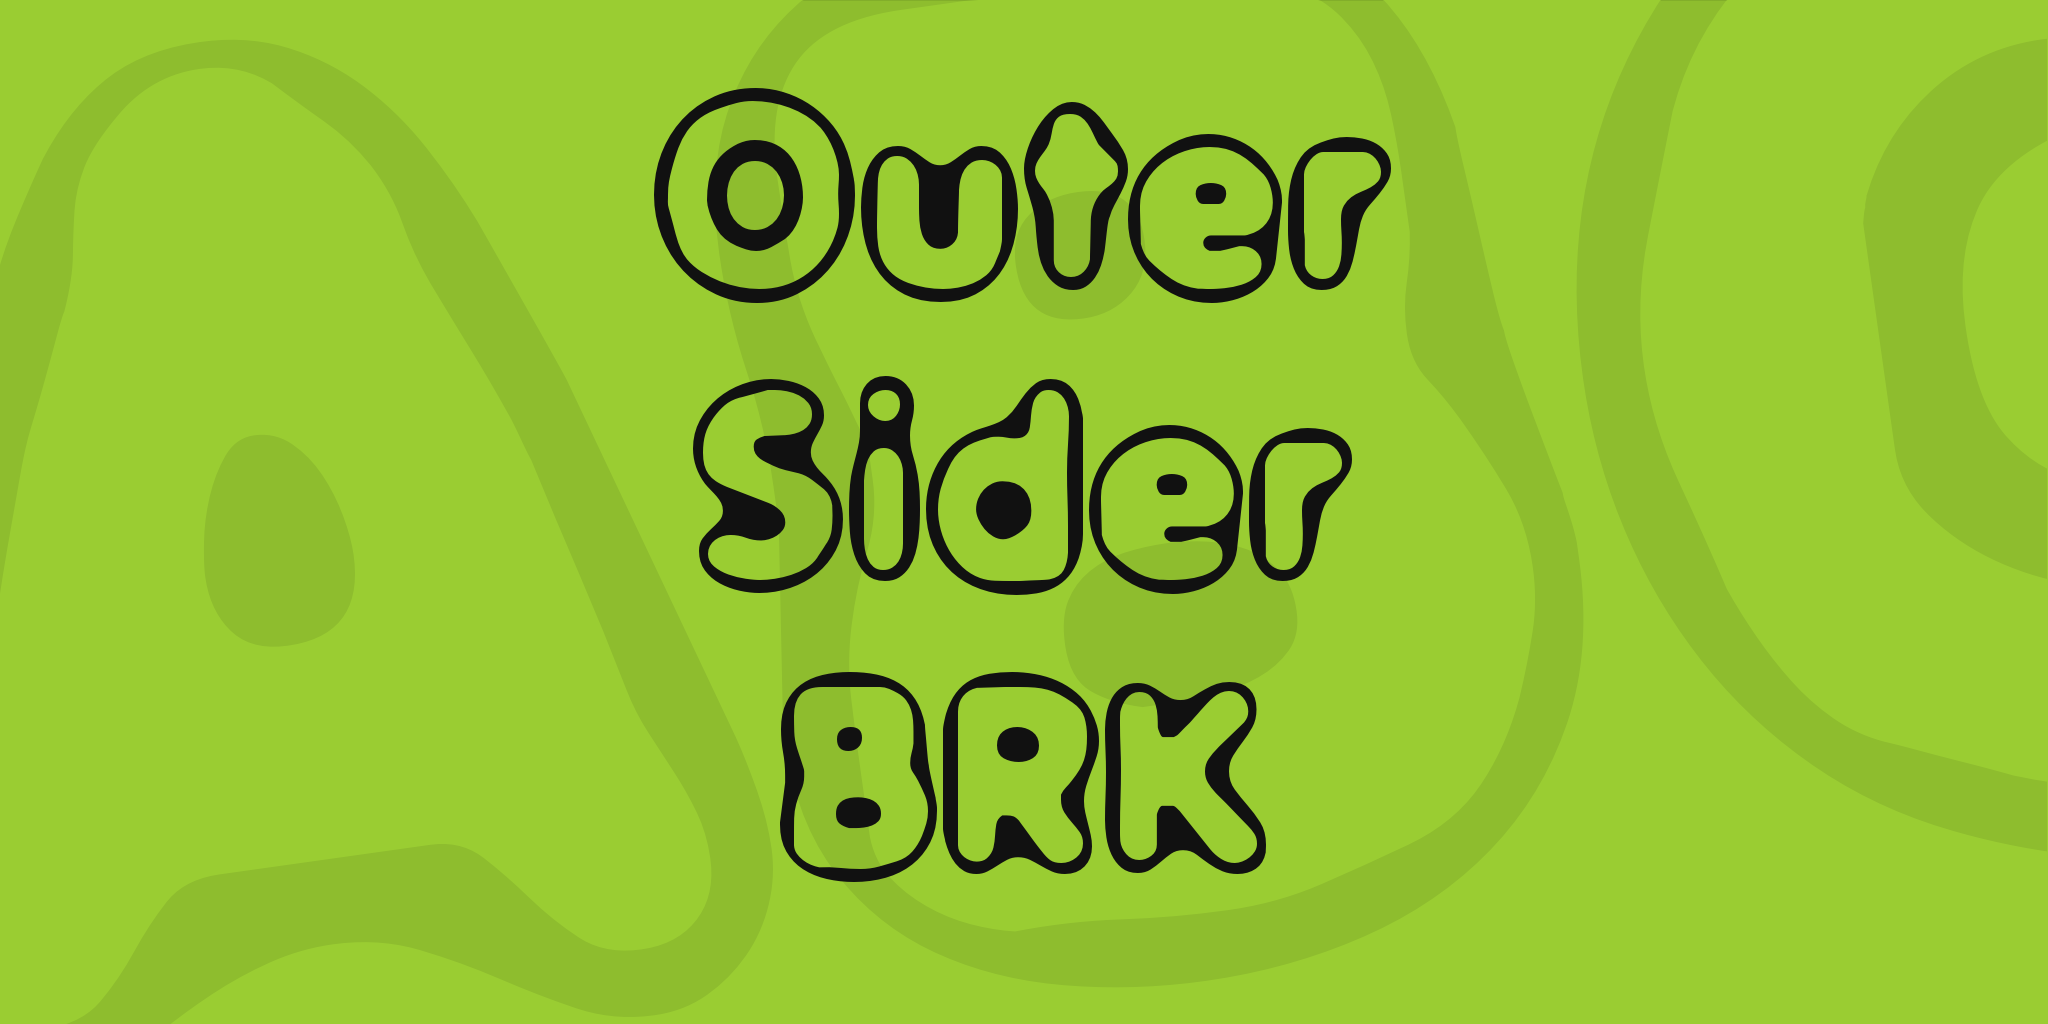 Outer Sider Brk